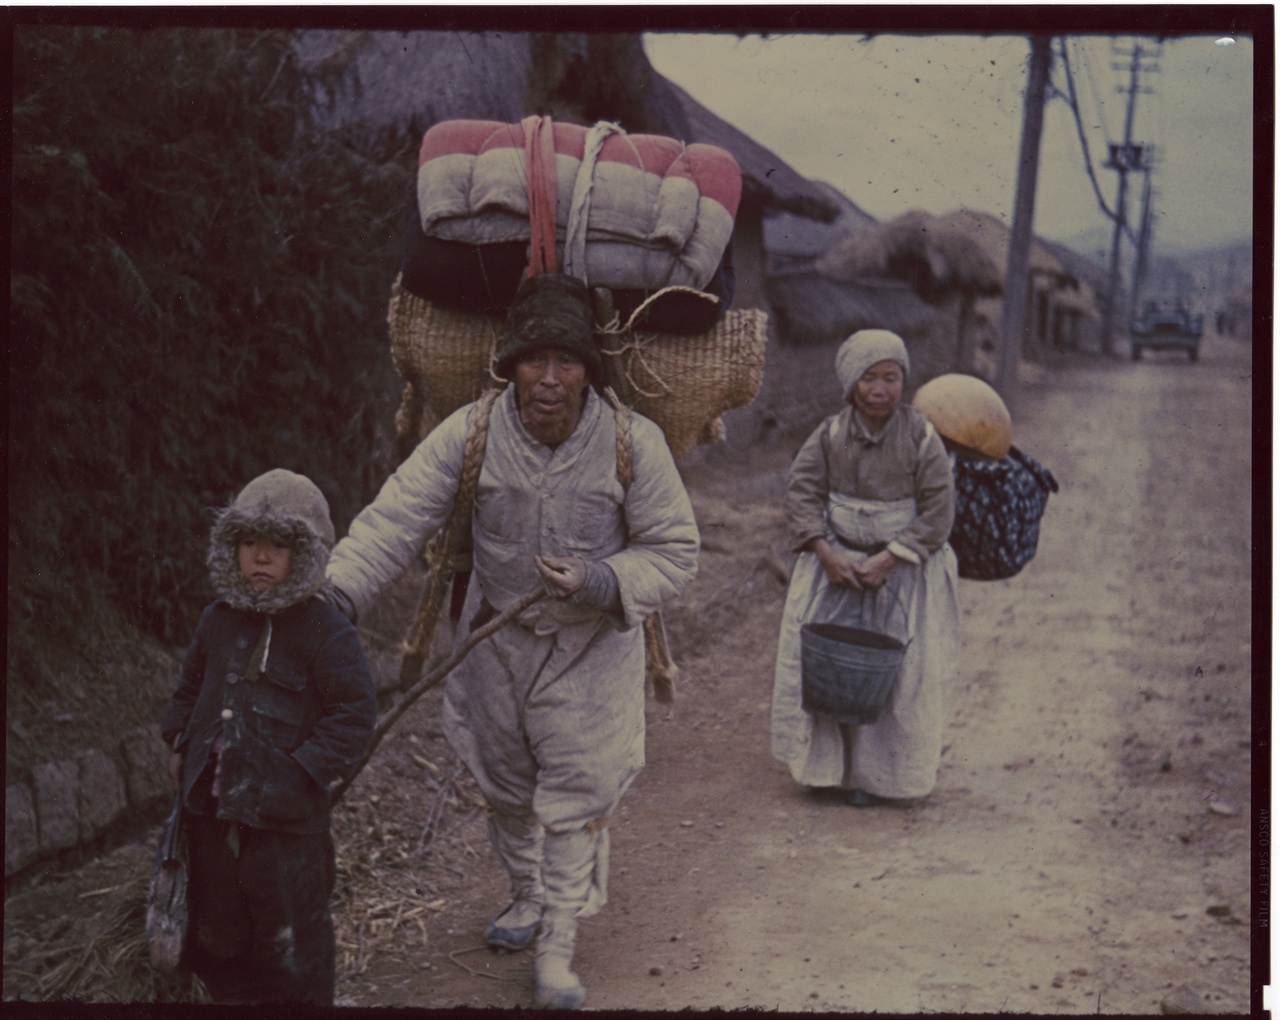 1951. 3. 1. 전주, 노인 부부가 어린 손자를 앞세우고 피란길에 나서고 있다.